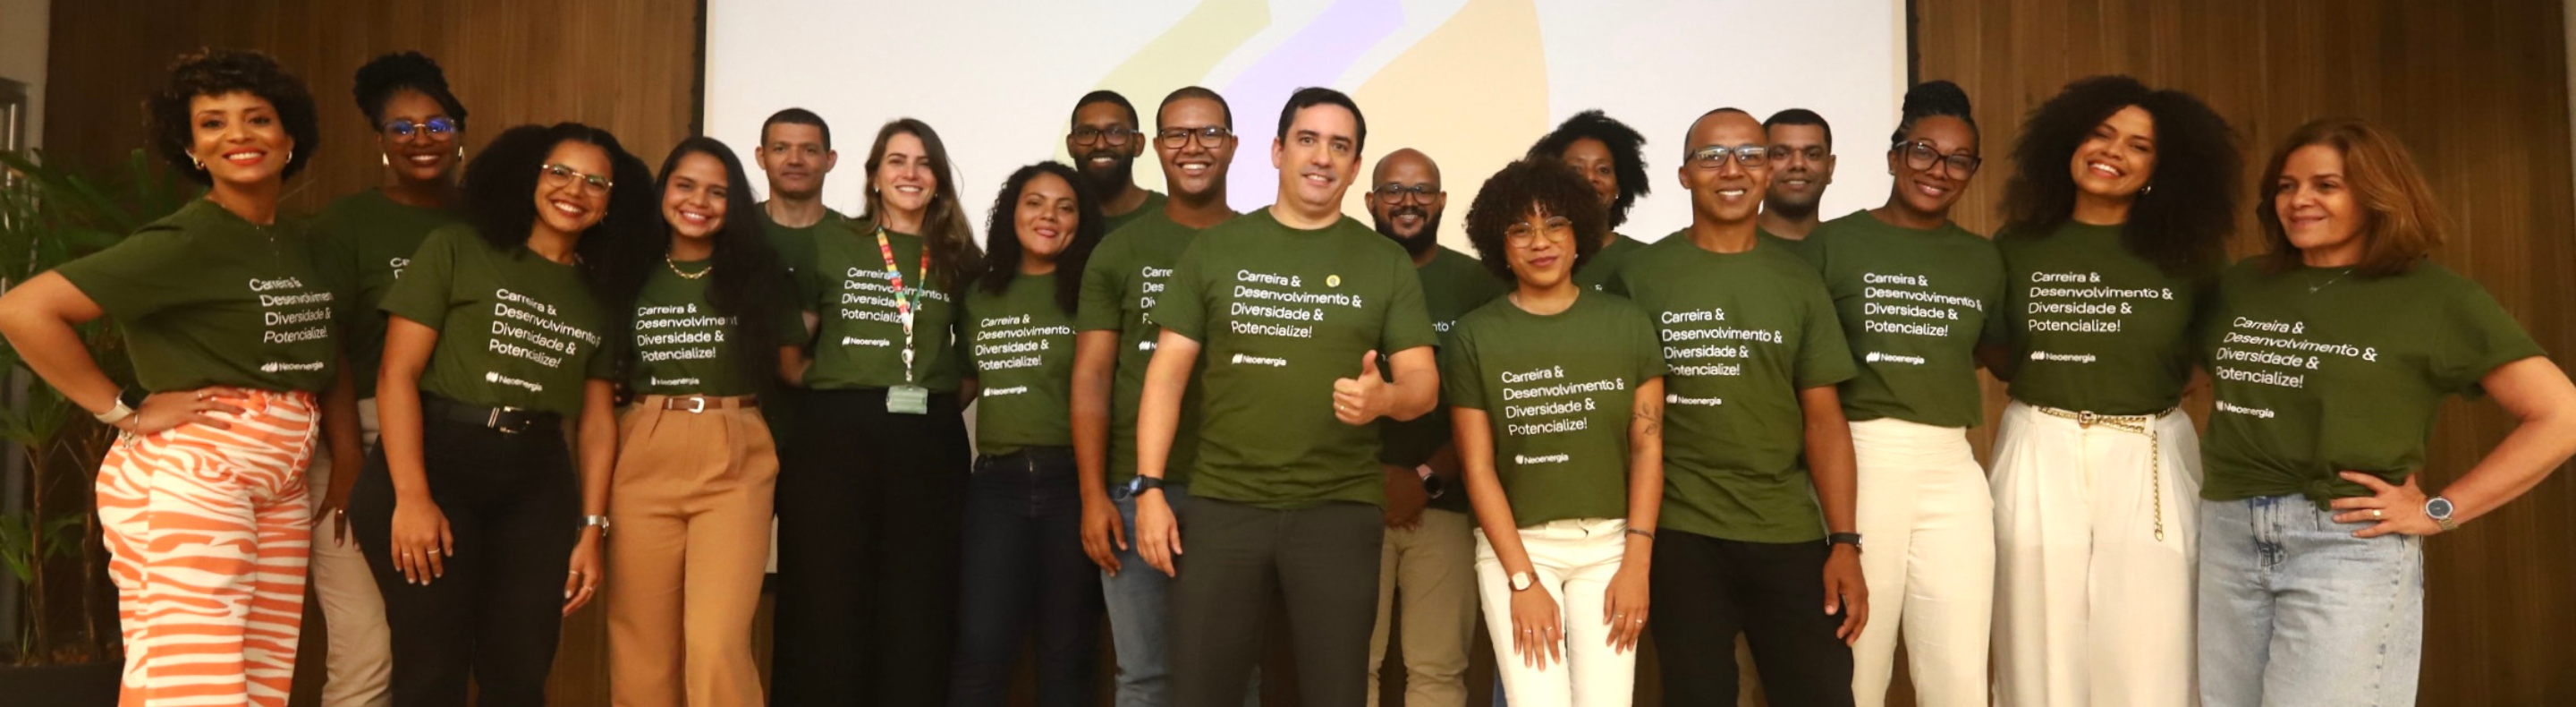 Neoenergia lança o primeiro programa de talentos exclusivo para pessoas negras do setor elétrico brasileiro